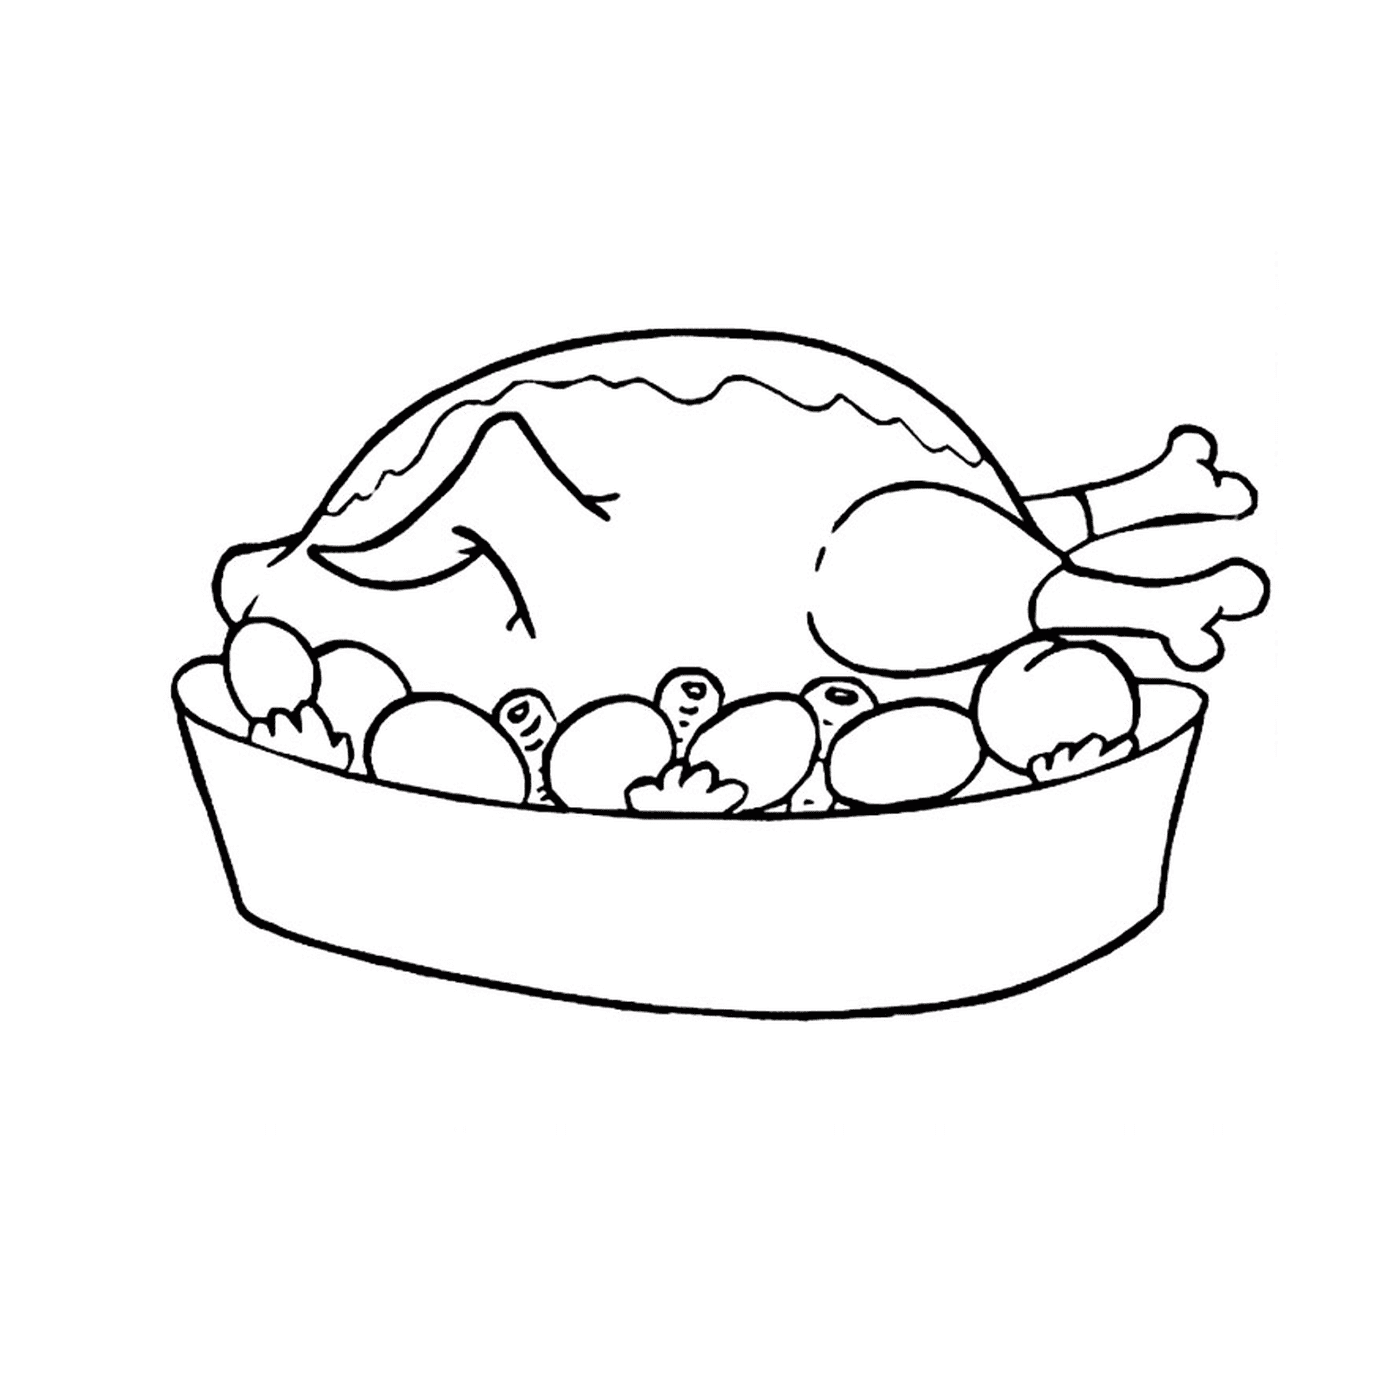  دجاجة في وعاء  